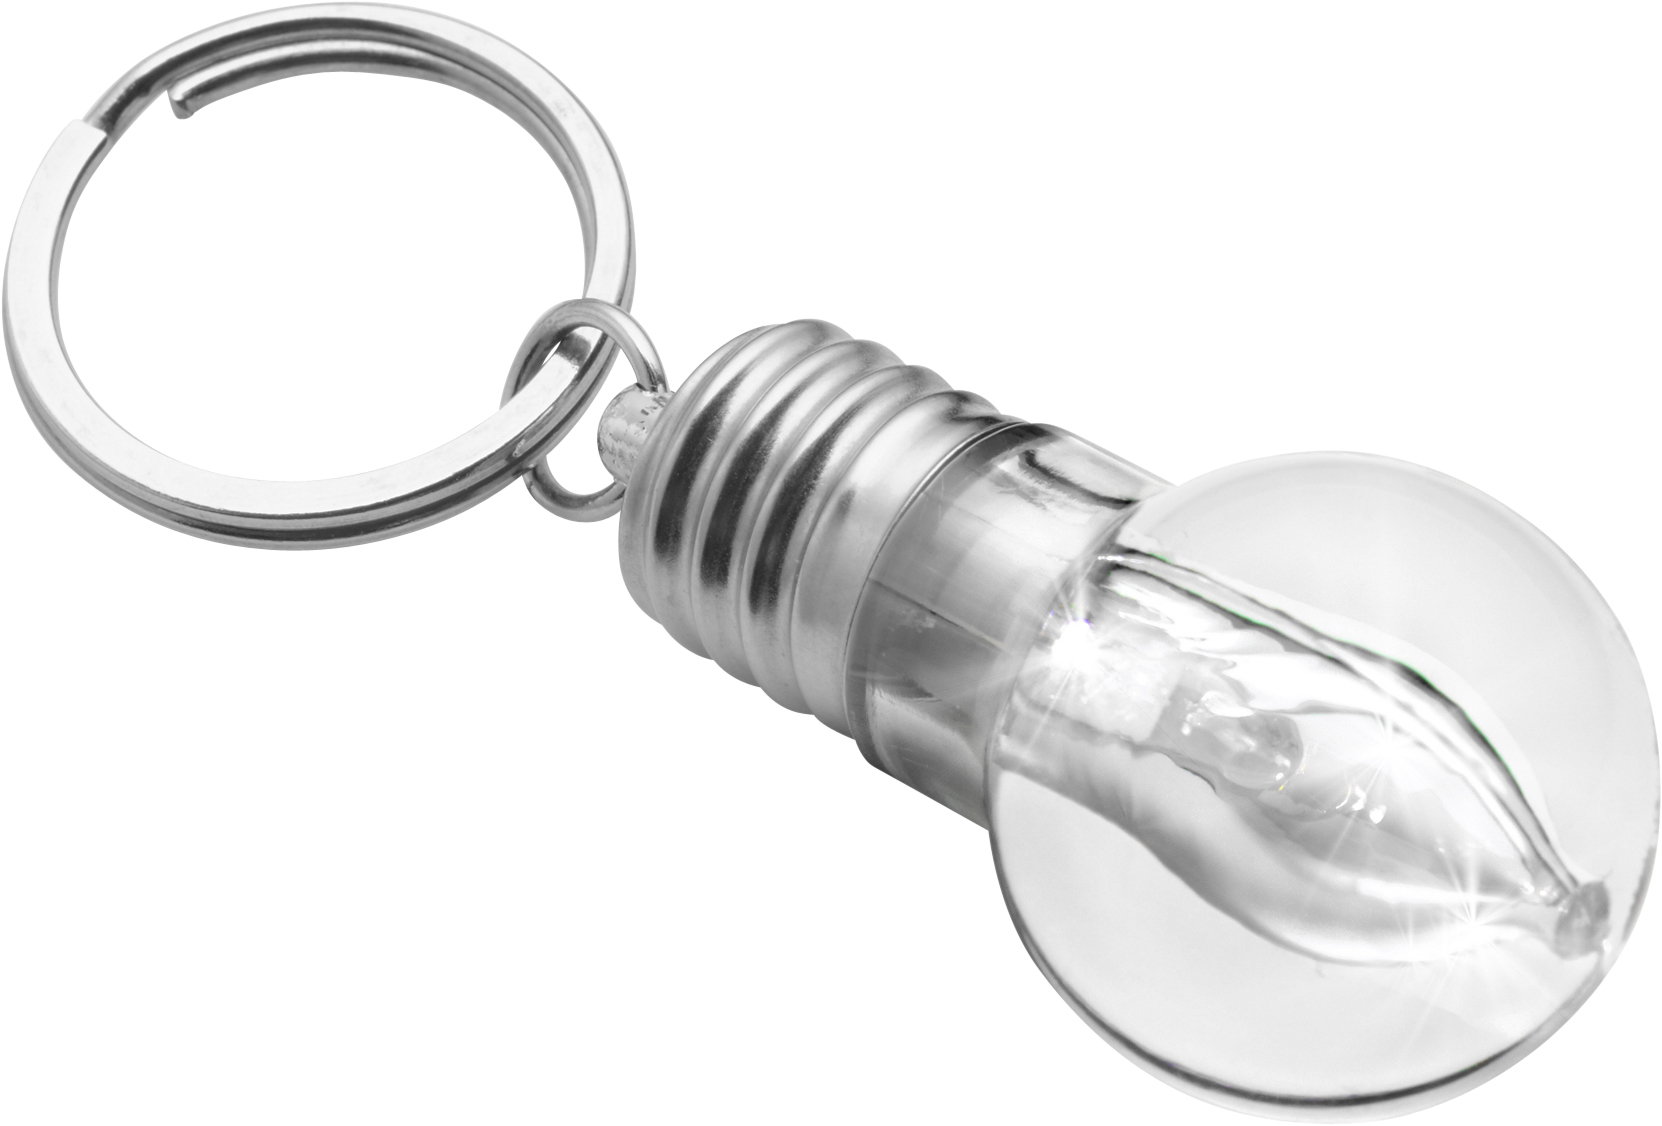 006336 032999999 3d135 lft pro05 fal - Light bulb key holder